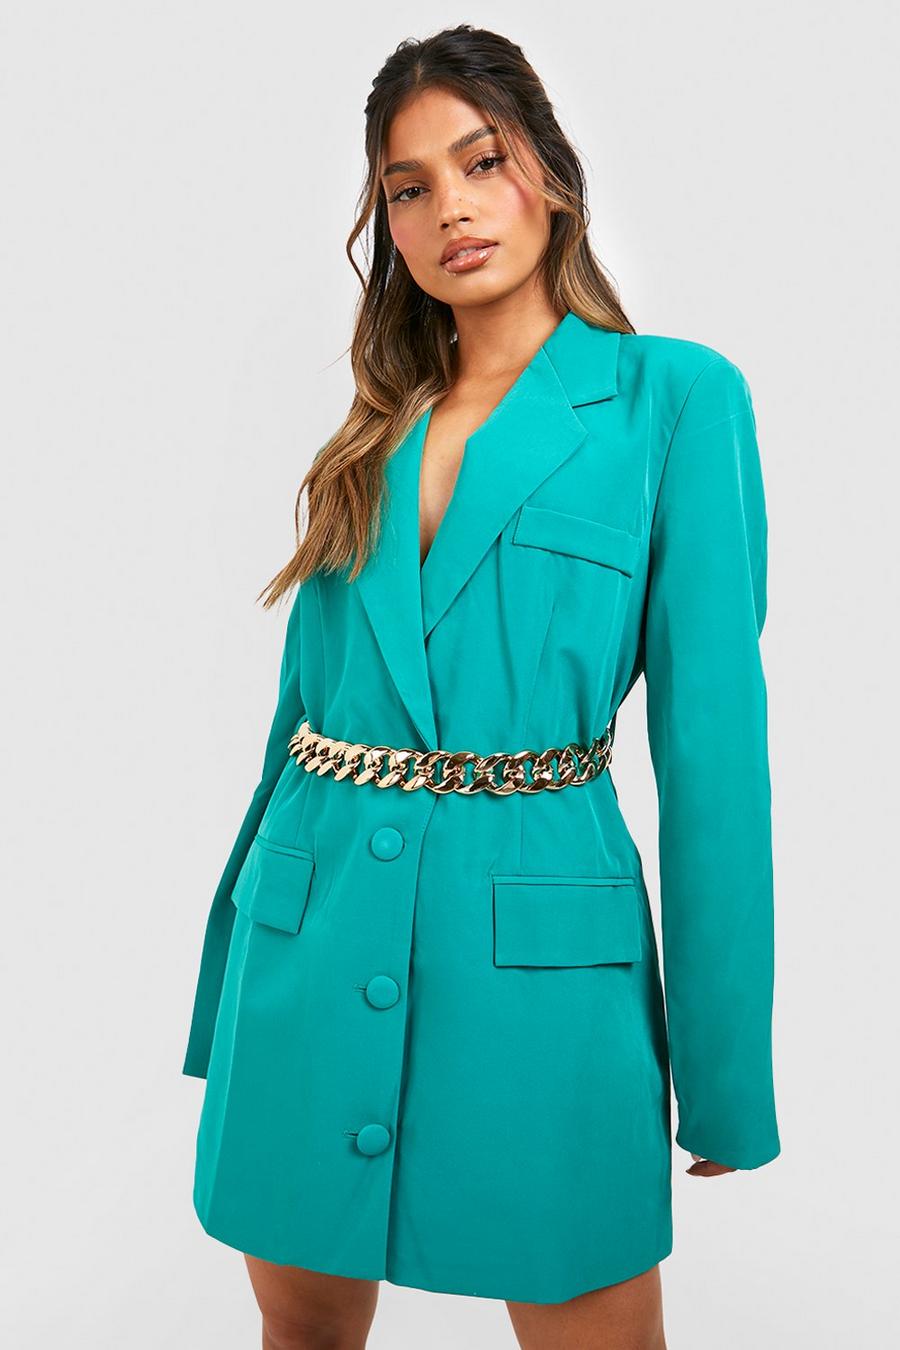 Emerald שמלת בלייזר עם חגורת שרשרת עבה